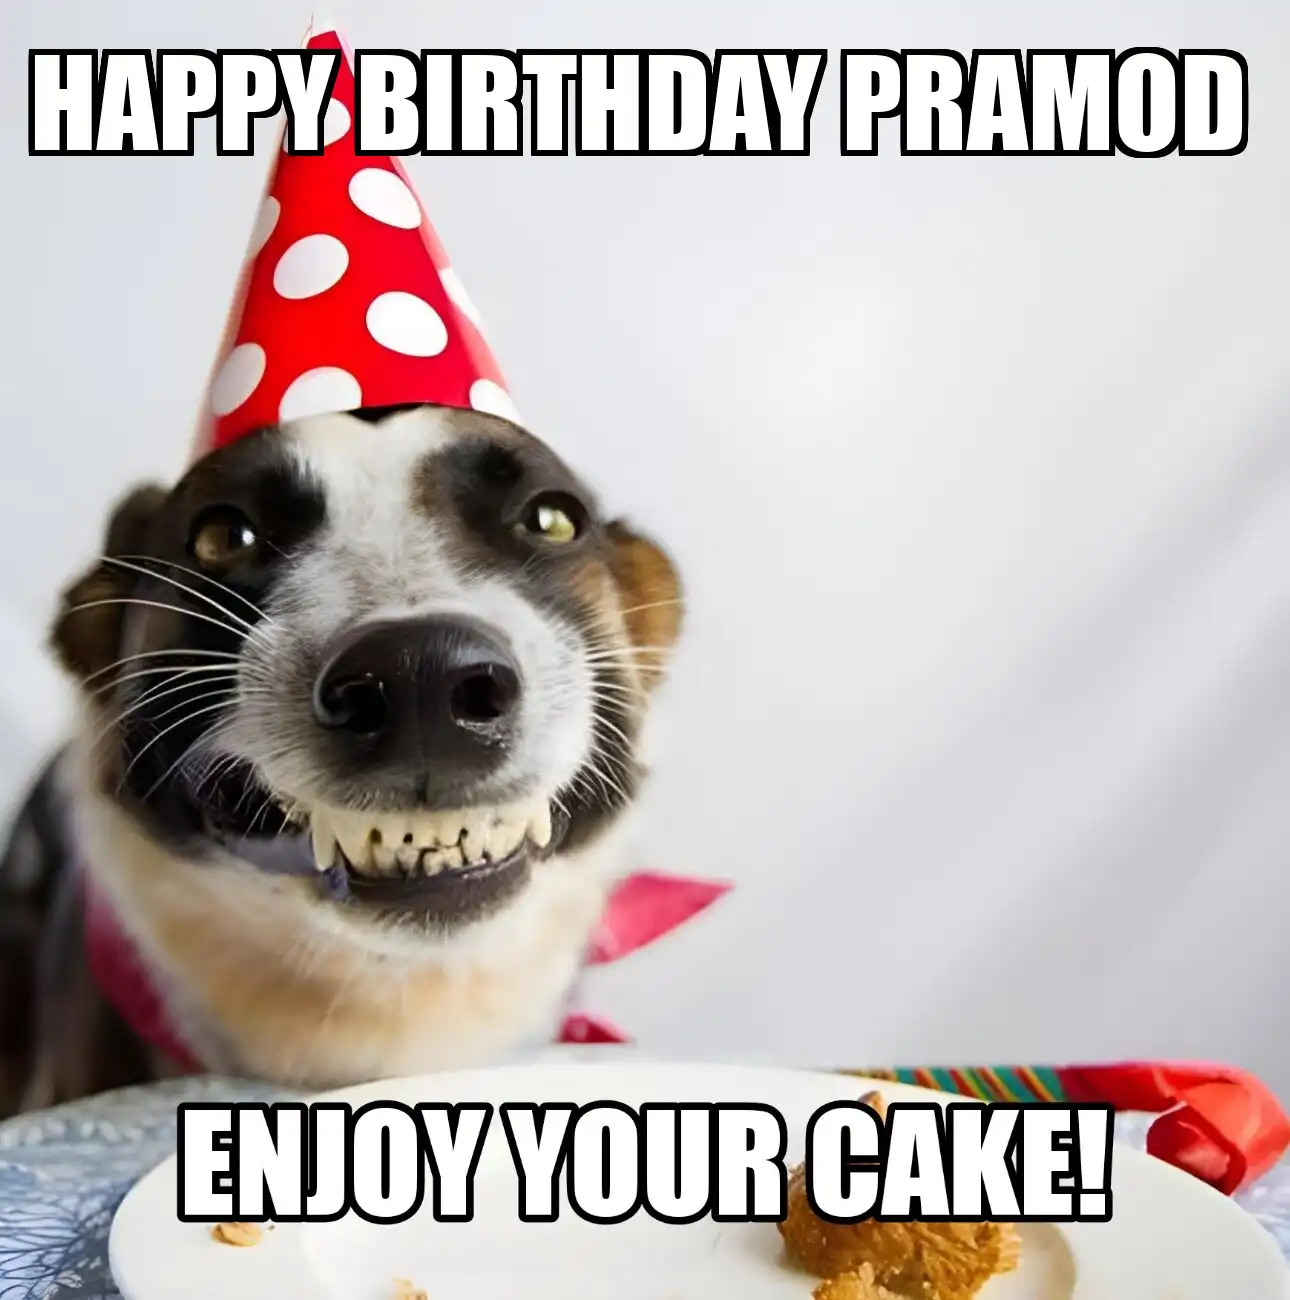 Happy Birthday Pramod Enjoy Your Cake Dog Meme